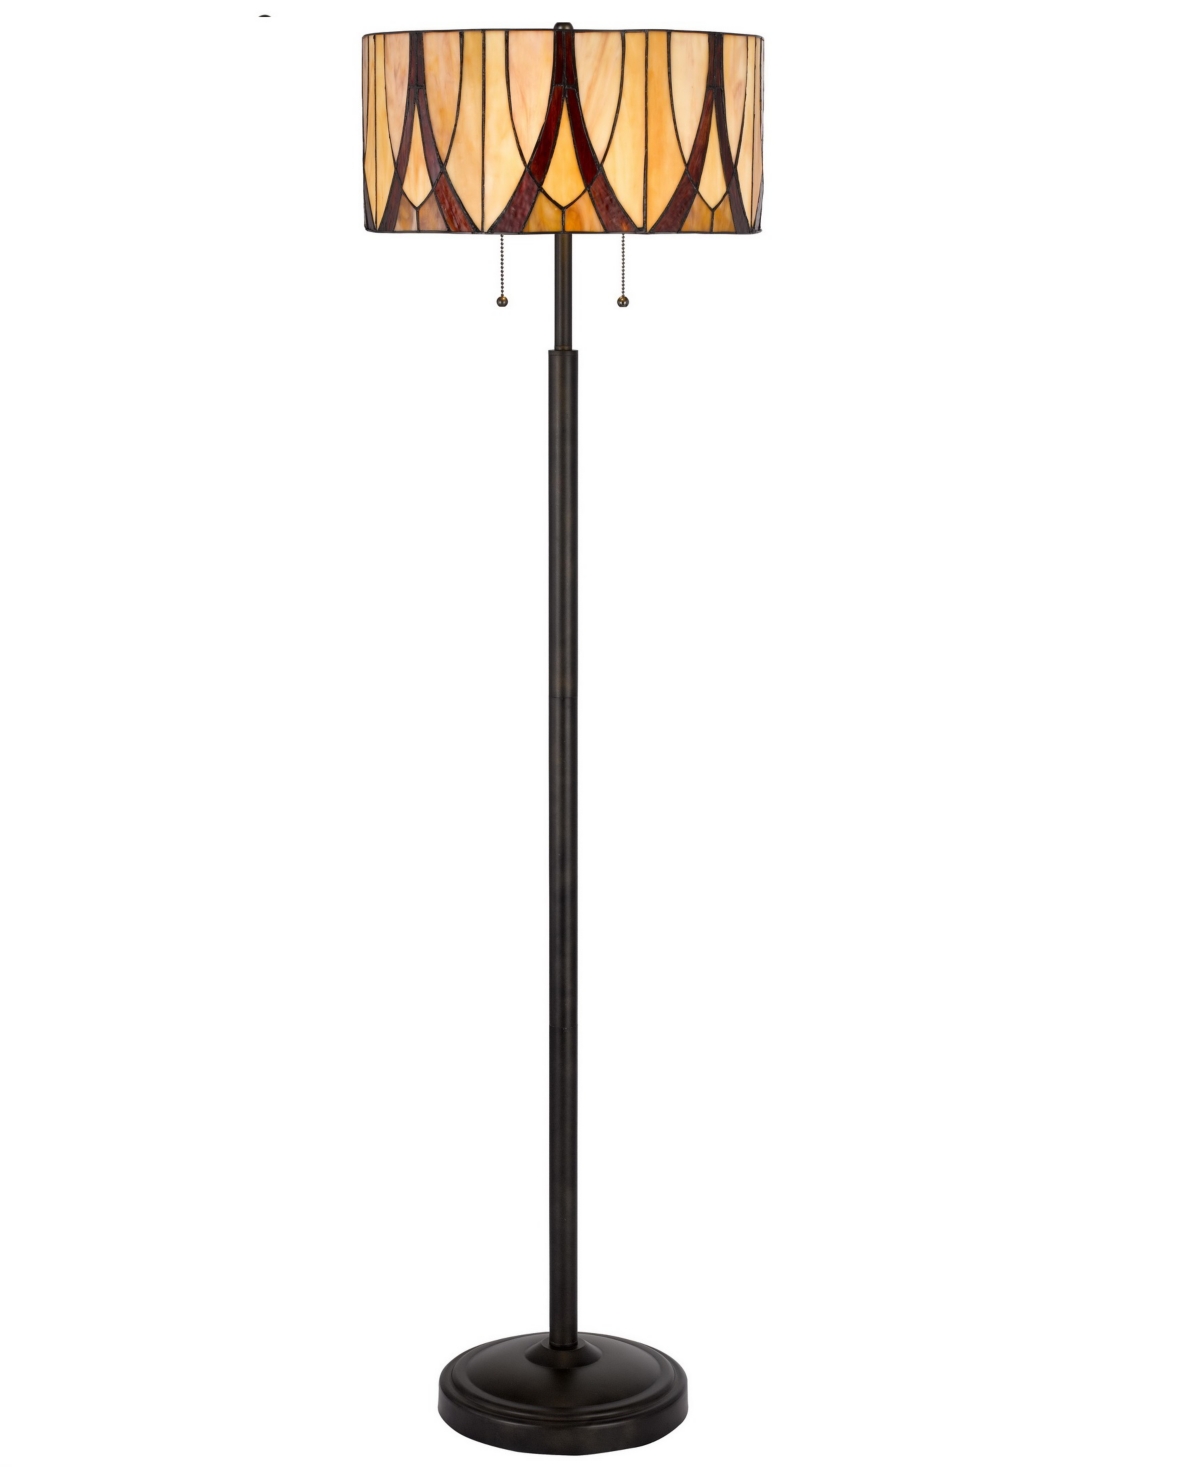 Cal Lighting 60" Height Metal Floor Lamp In Antique Bronze